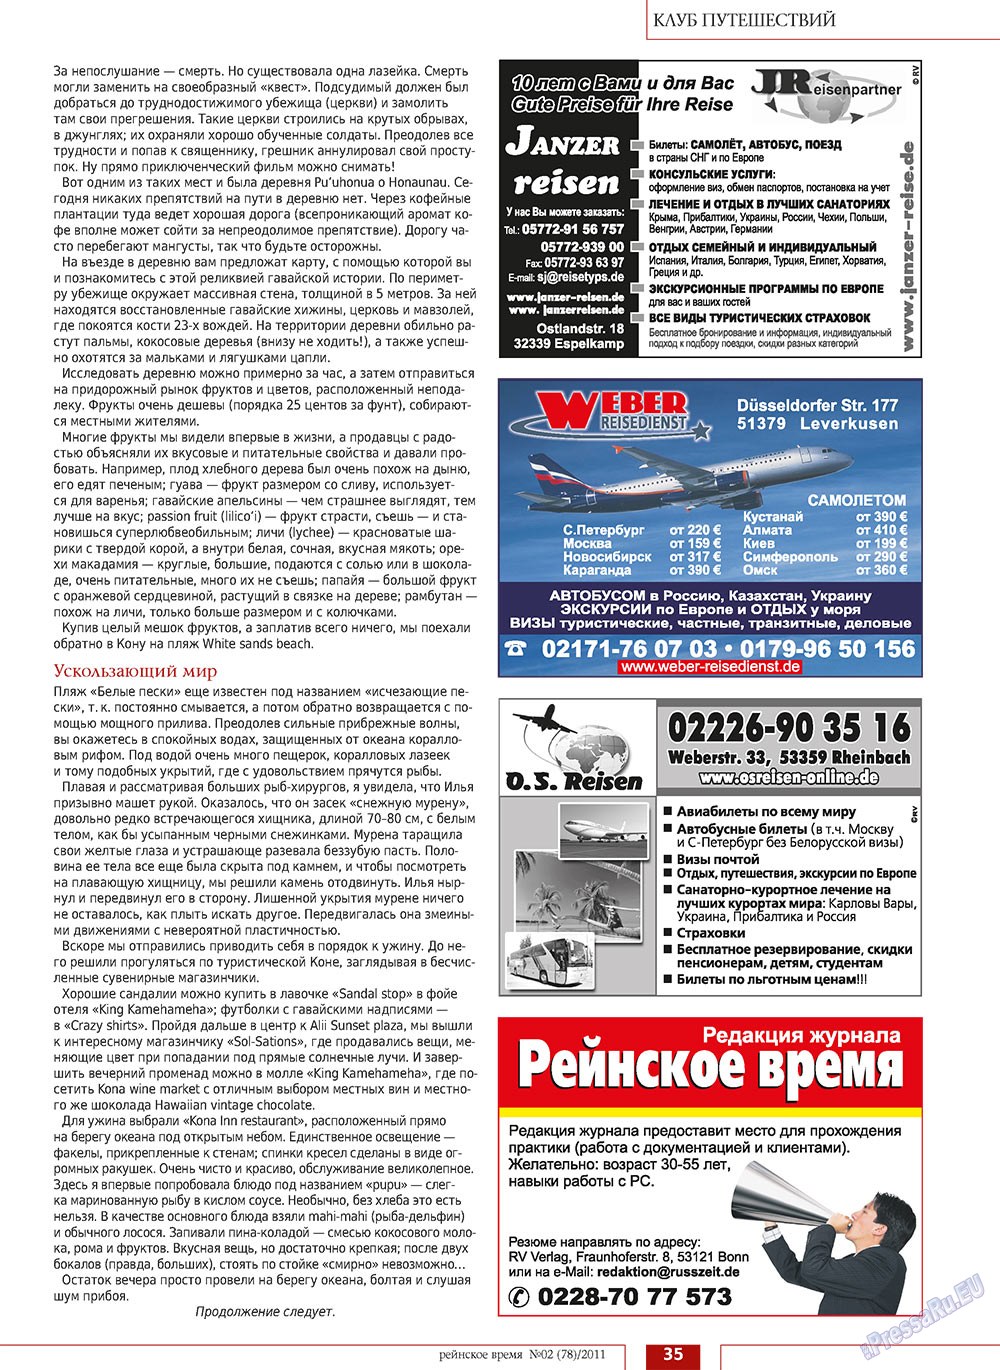 Рейнское время, журнал. 2011 №2 стр.35